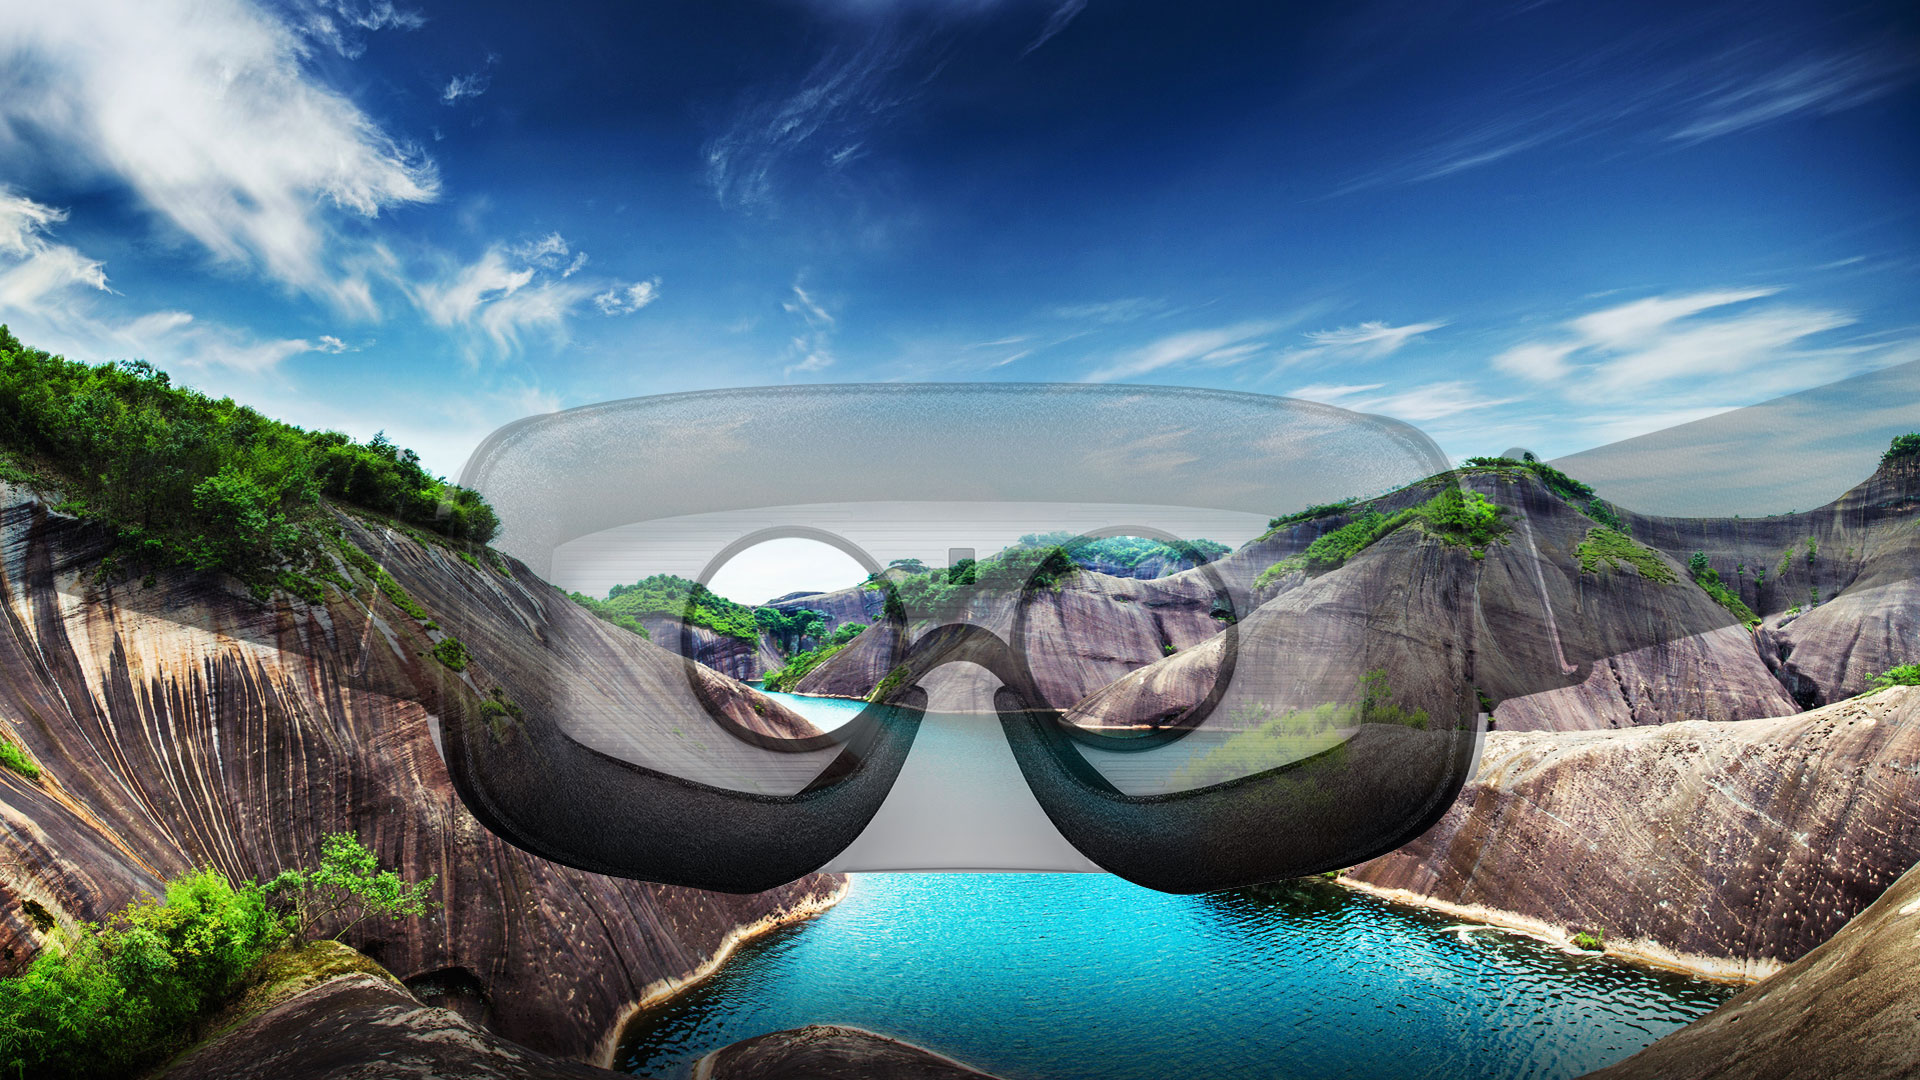 1. Aduce realitatea virtuala (augmentata) la toata lumea